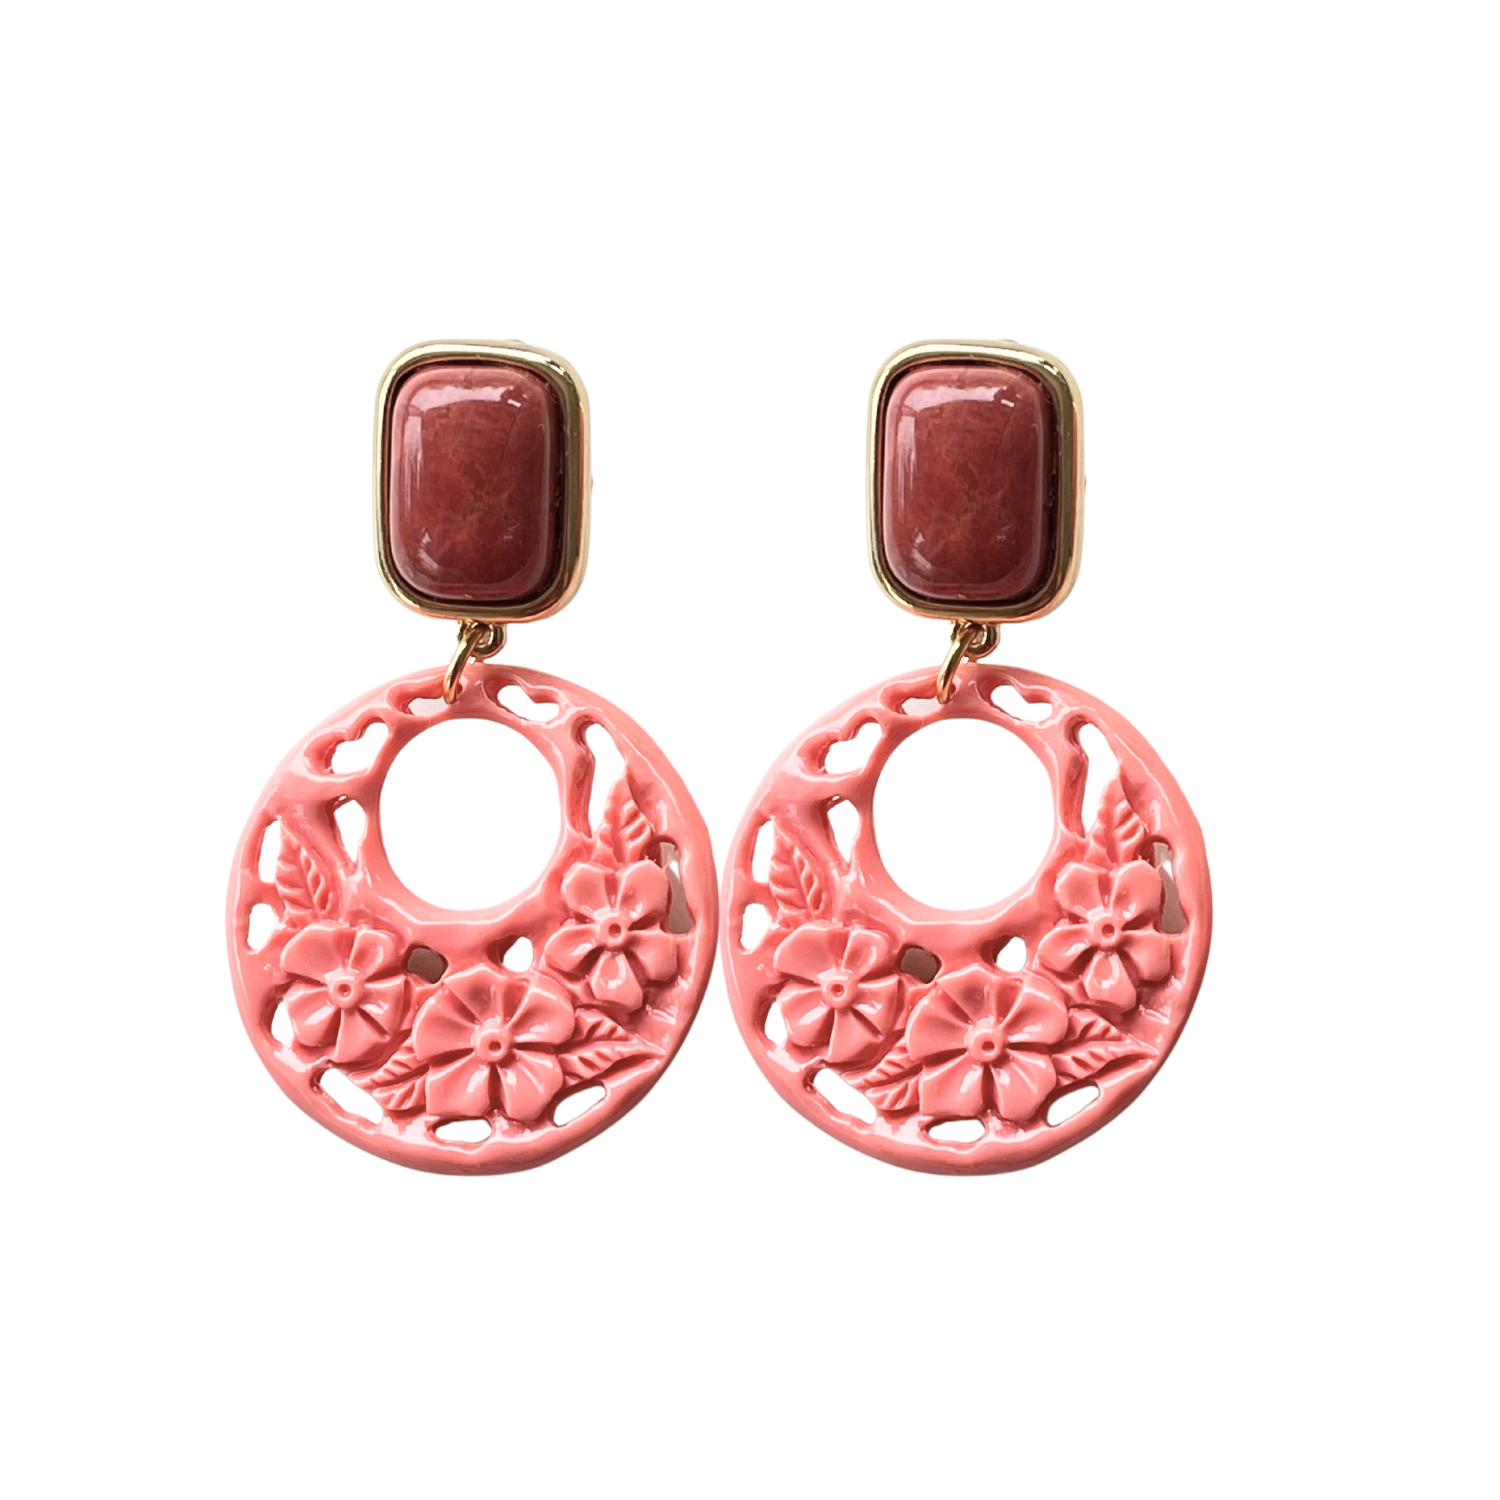 Ohrringe mit Amazonit-Basis und Korallenanhänger - Alessandra Schmidt Jewelry